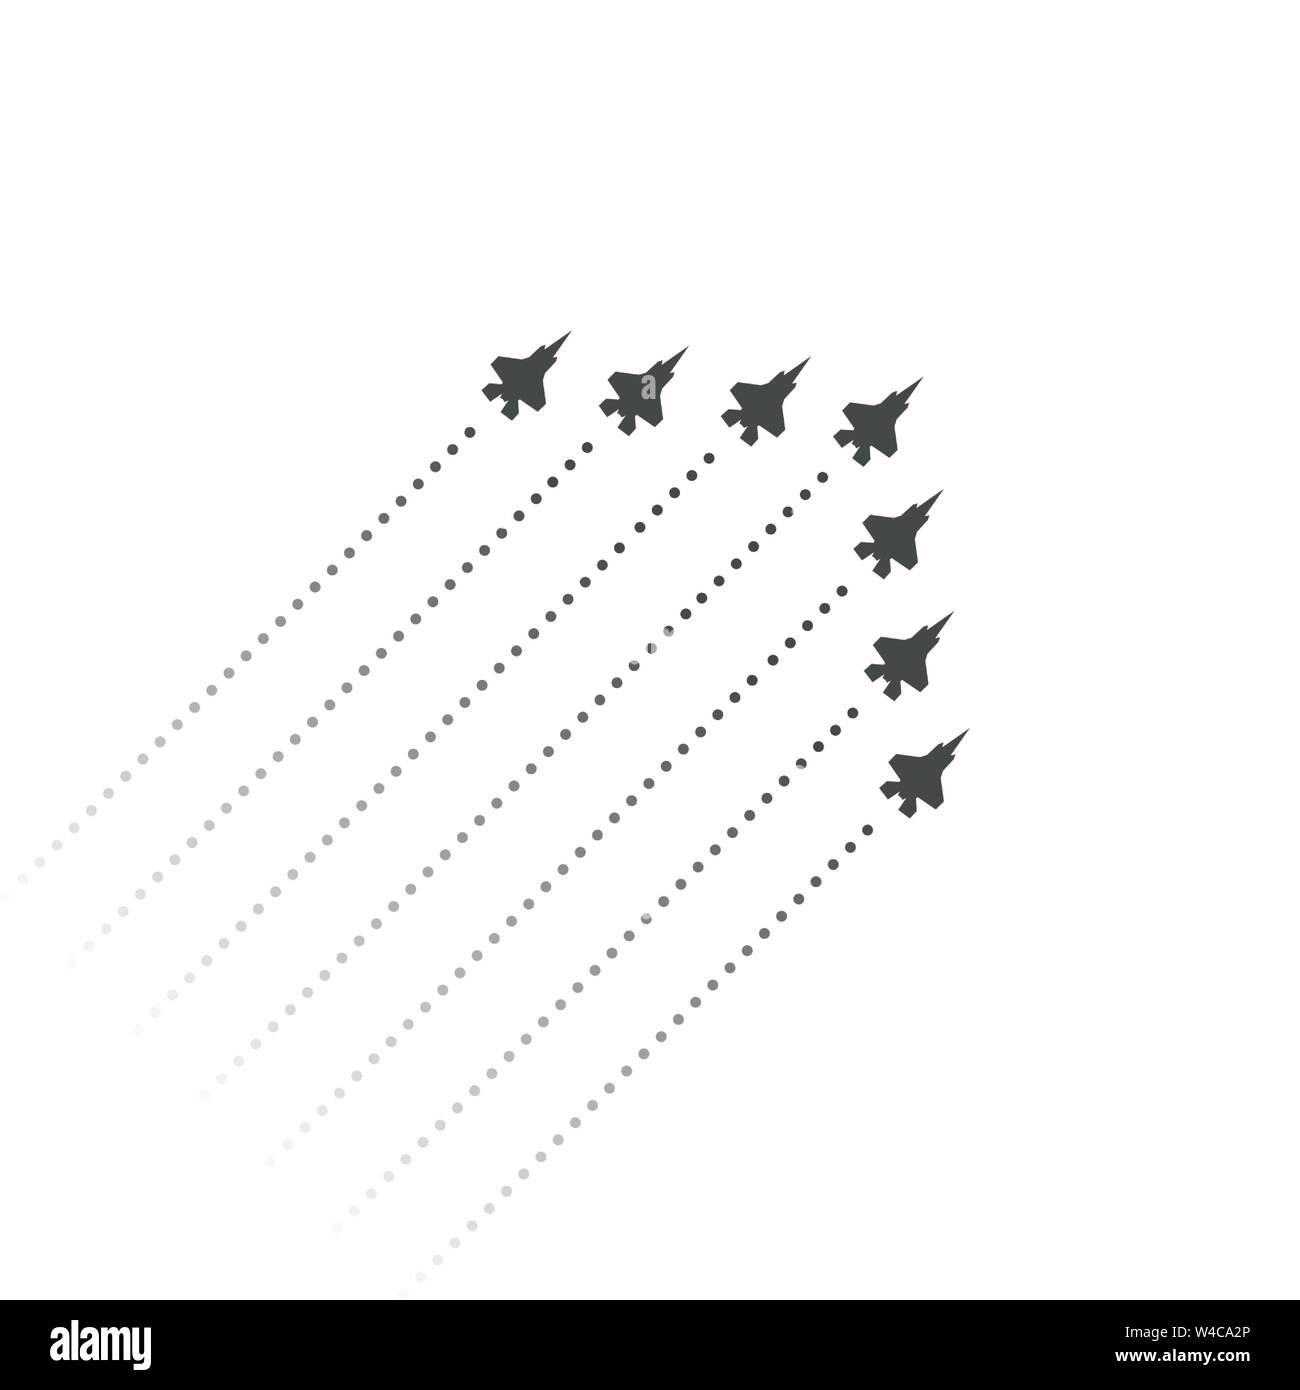 Aviazione Militare. I combattenti volare fino. forma a cuneo del jet in volo aerei. Sagome di reattivi e piani di traccia di motori a getto. Illustrazione Vettoriale. Illustrazione Vettoriale